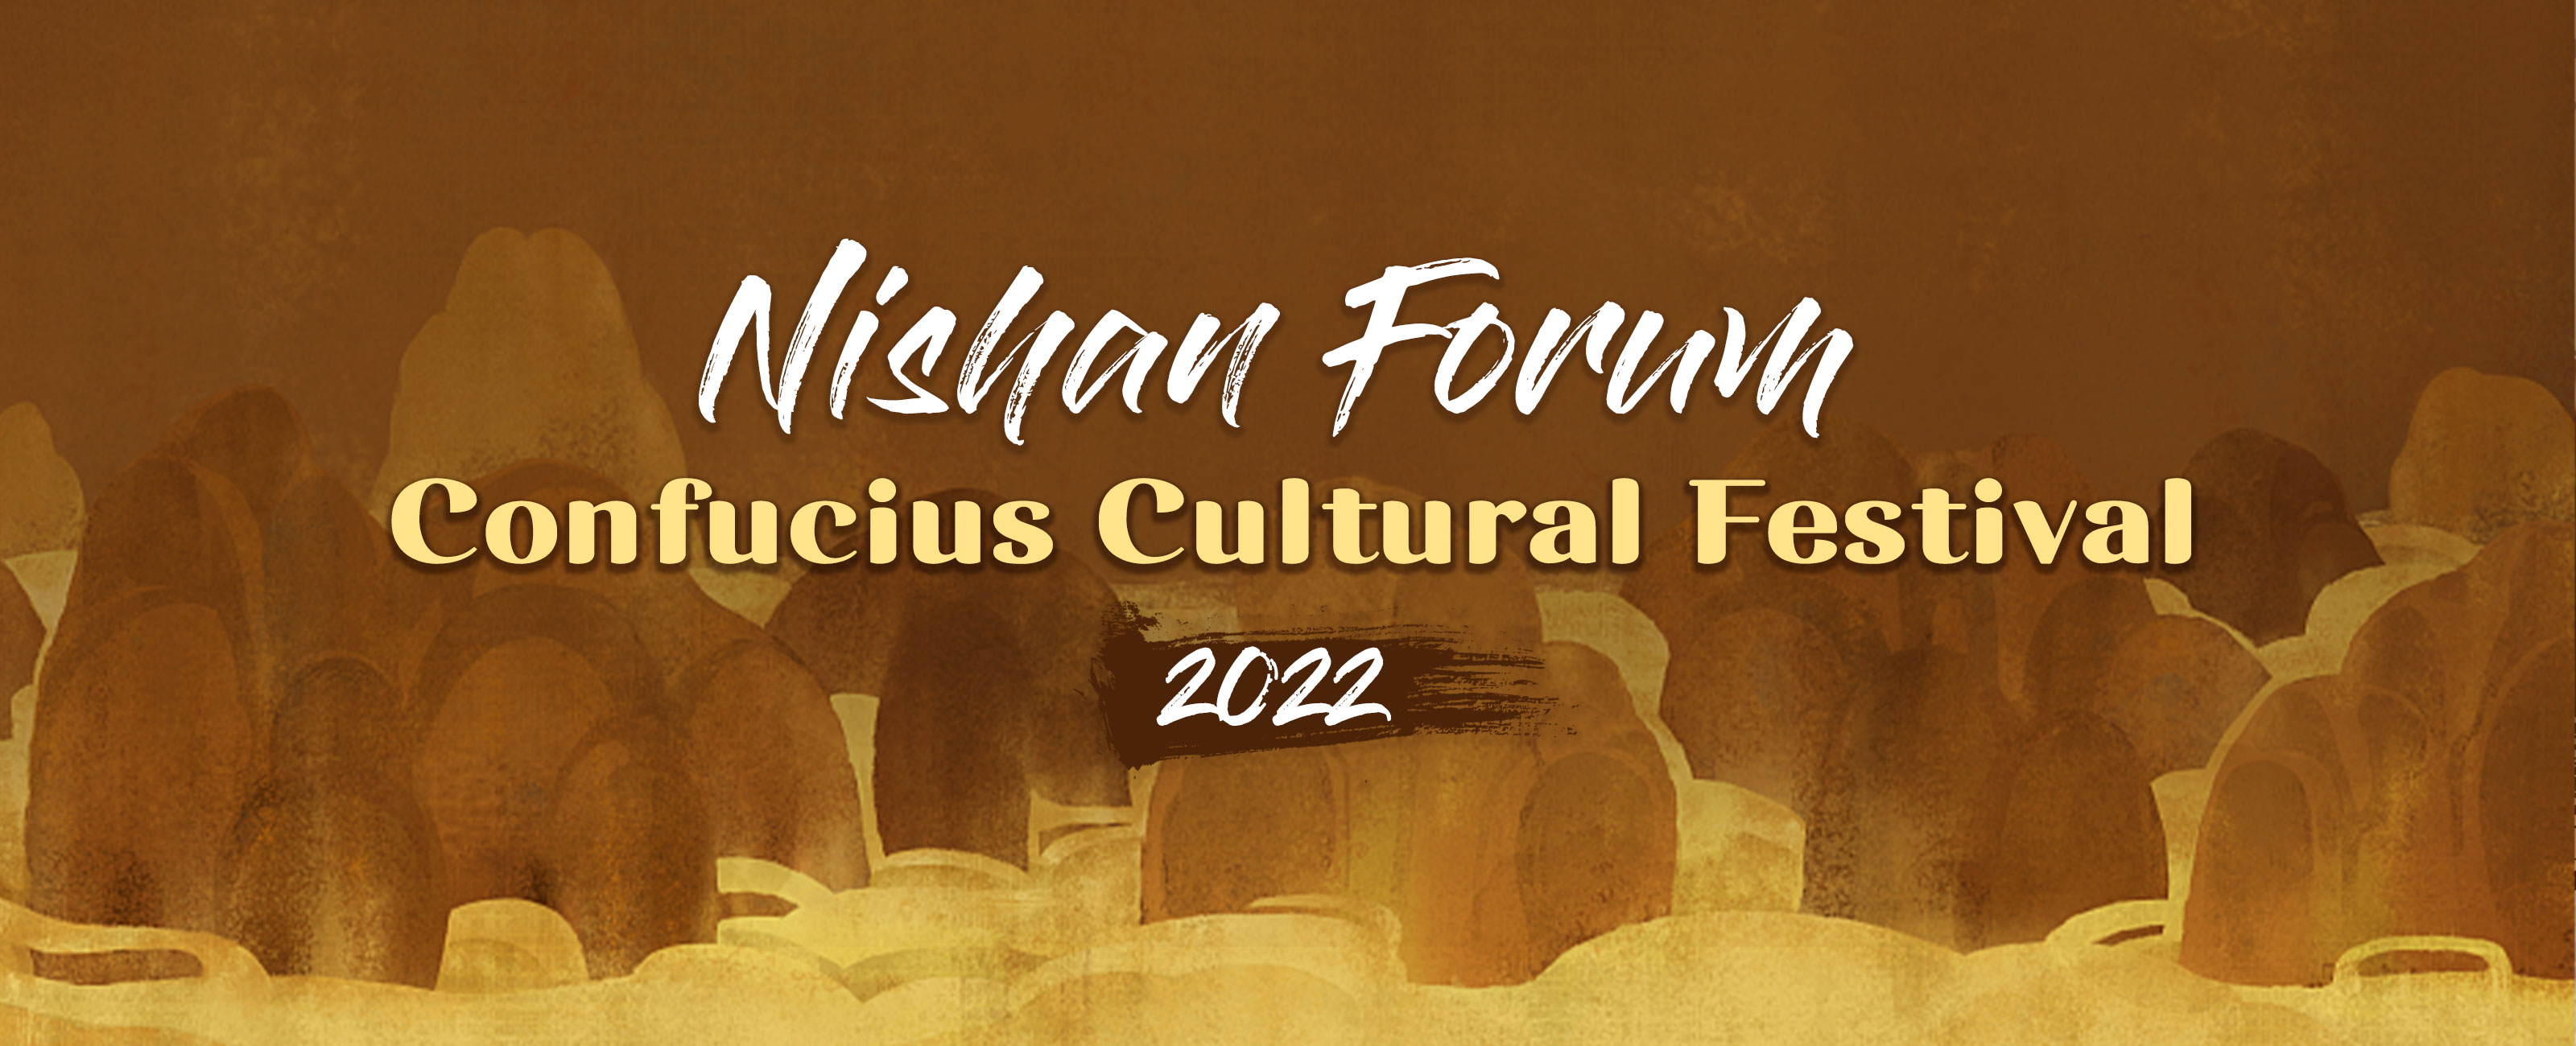 2022 Confucius Cultural Festival